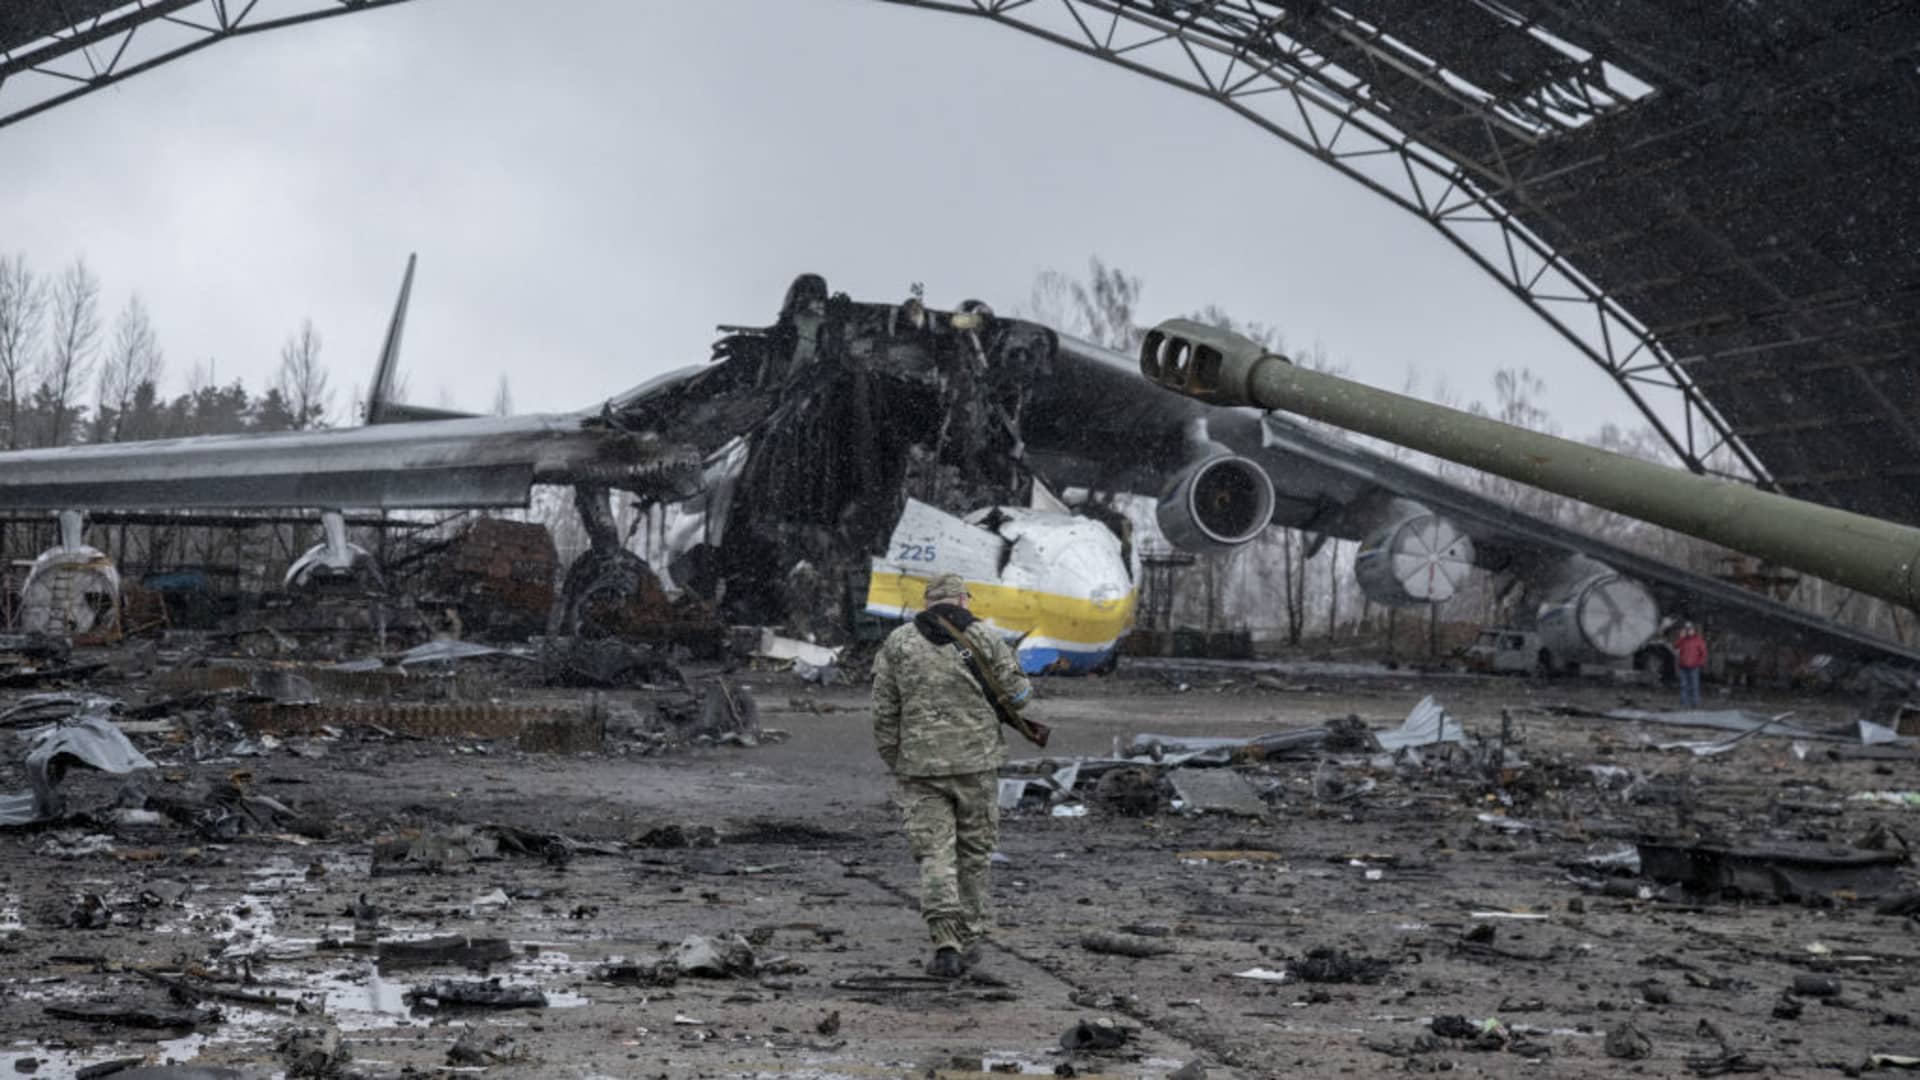 Photos show world’s largest cargo plane destroyed in Ukraine – CNBC